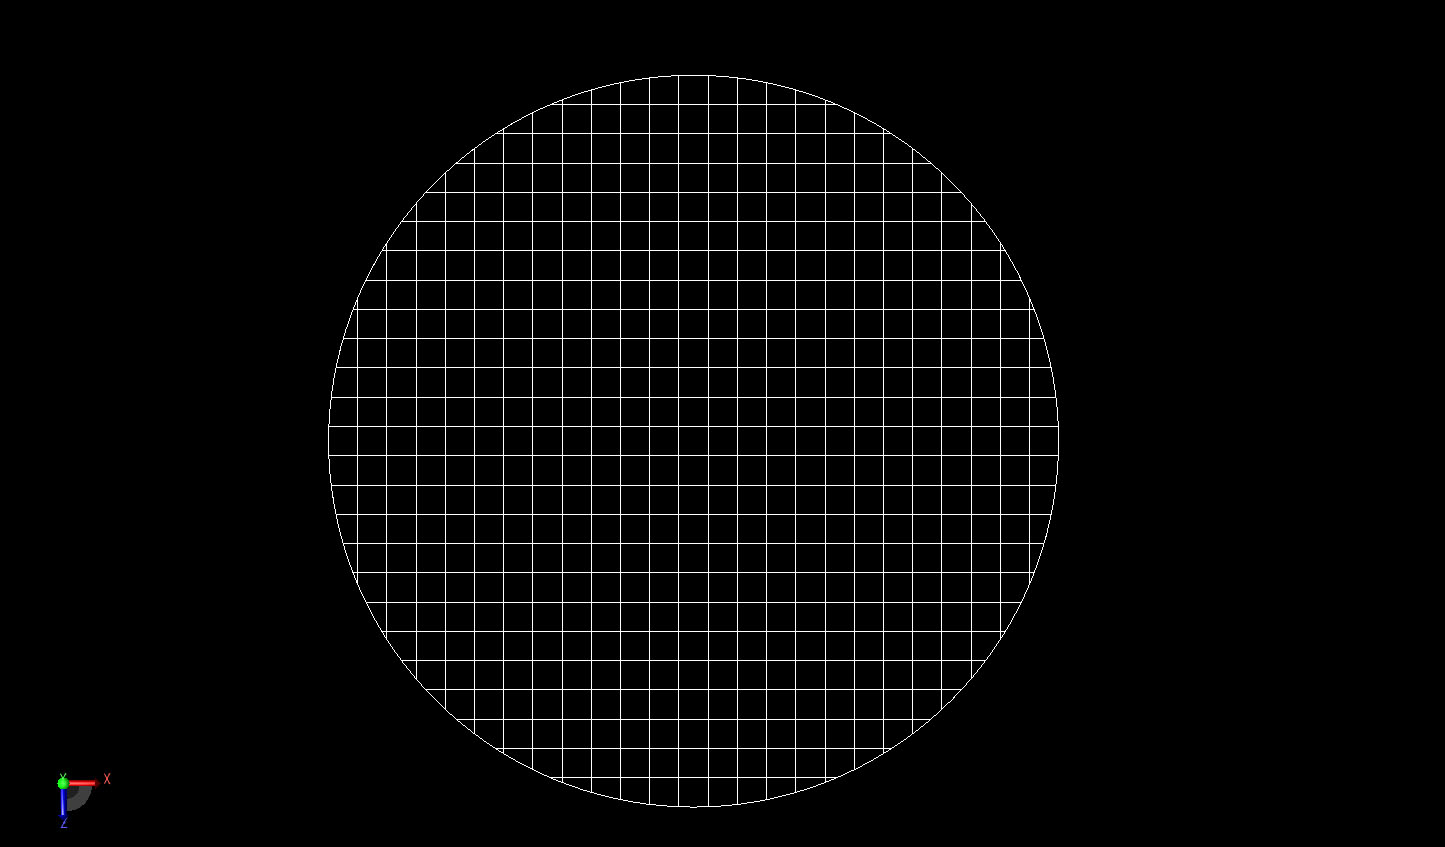 图 2A 为圆柱体 2 毫米分辨率 FDTD 网格的截面图，显示了圆柱体曲面上的 XACT 网格。